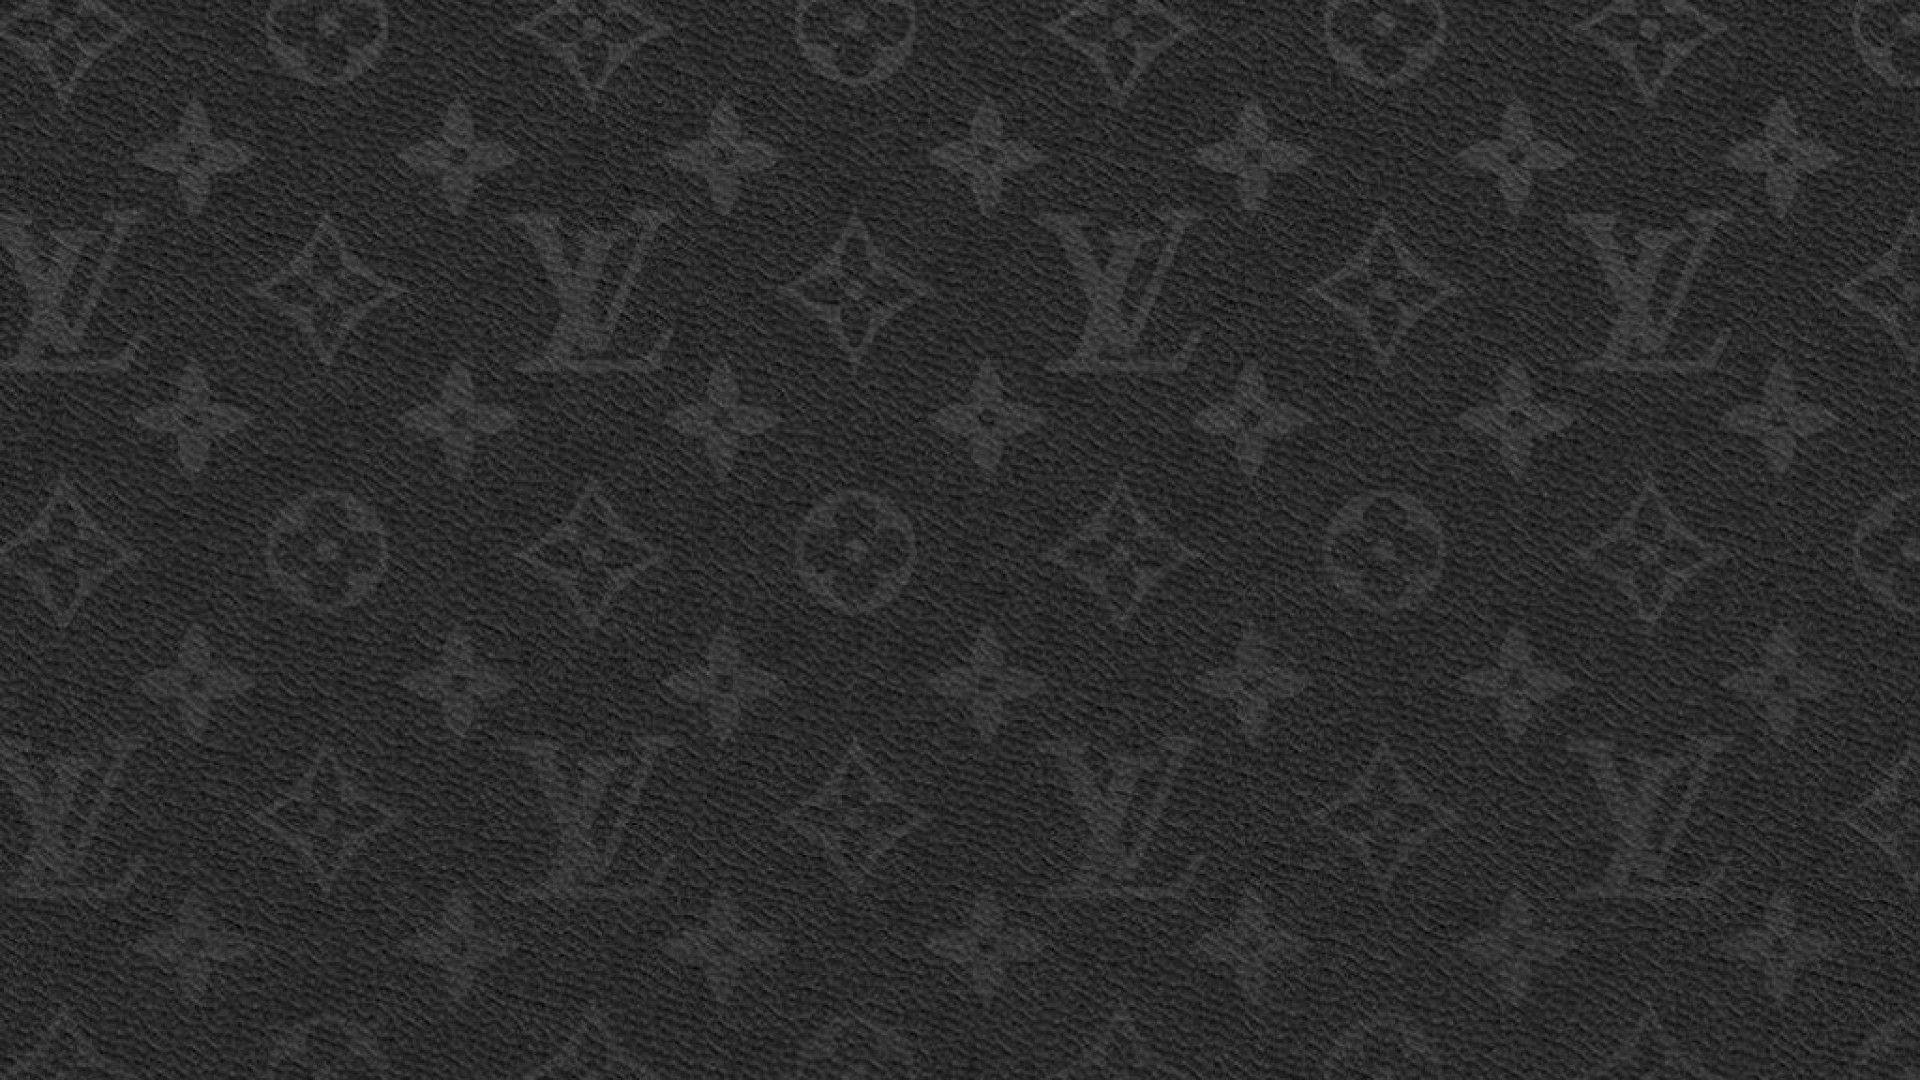 Tổng hợp 25 hình nền Louis Vuitton đẹp nhất cho máy tính